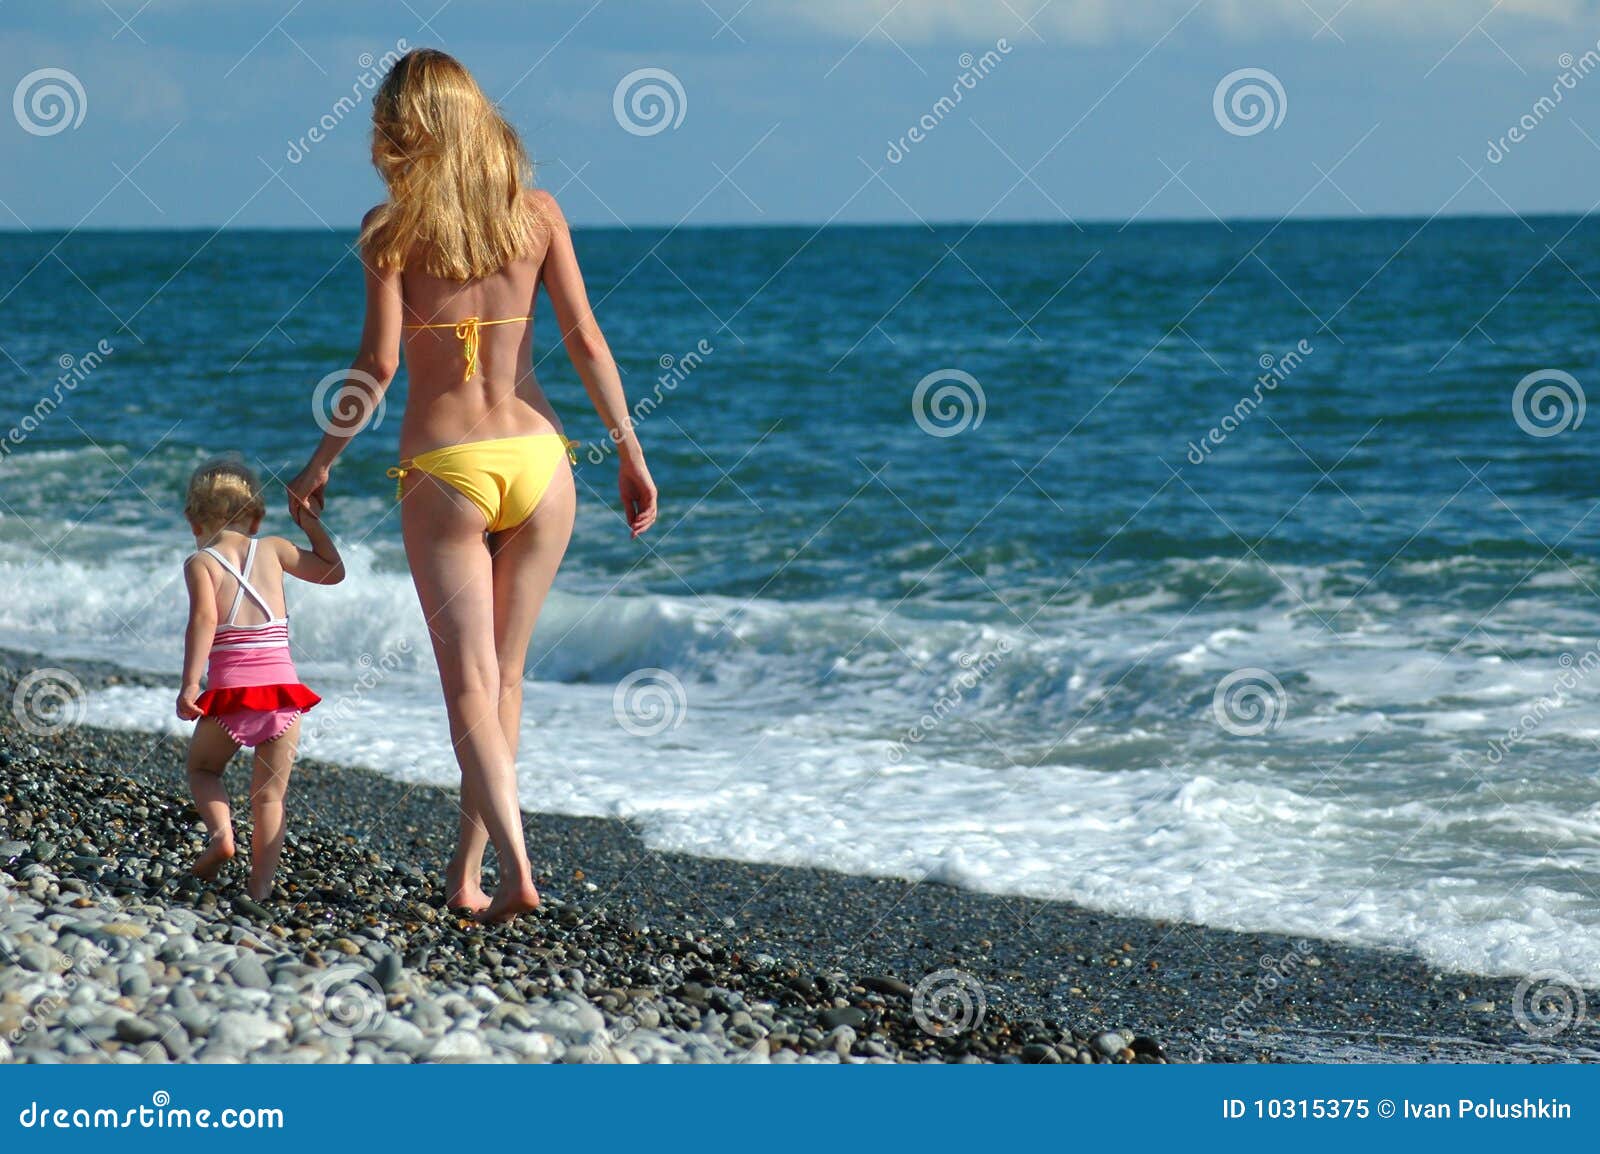 за голыми детьми на пляже фото 31